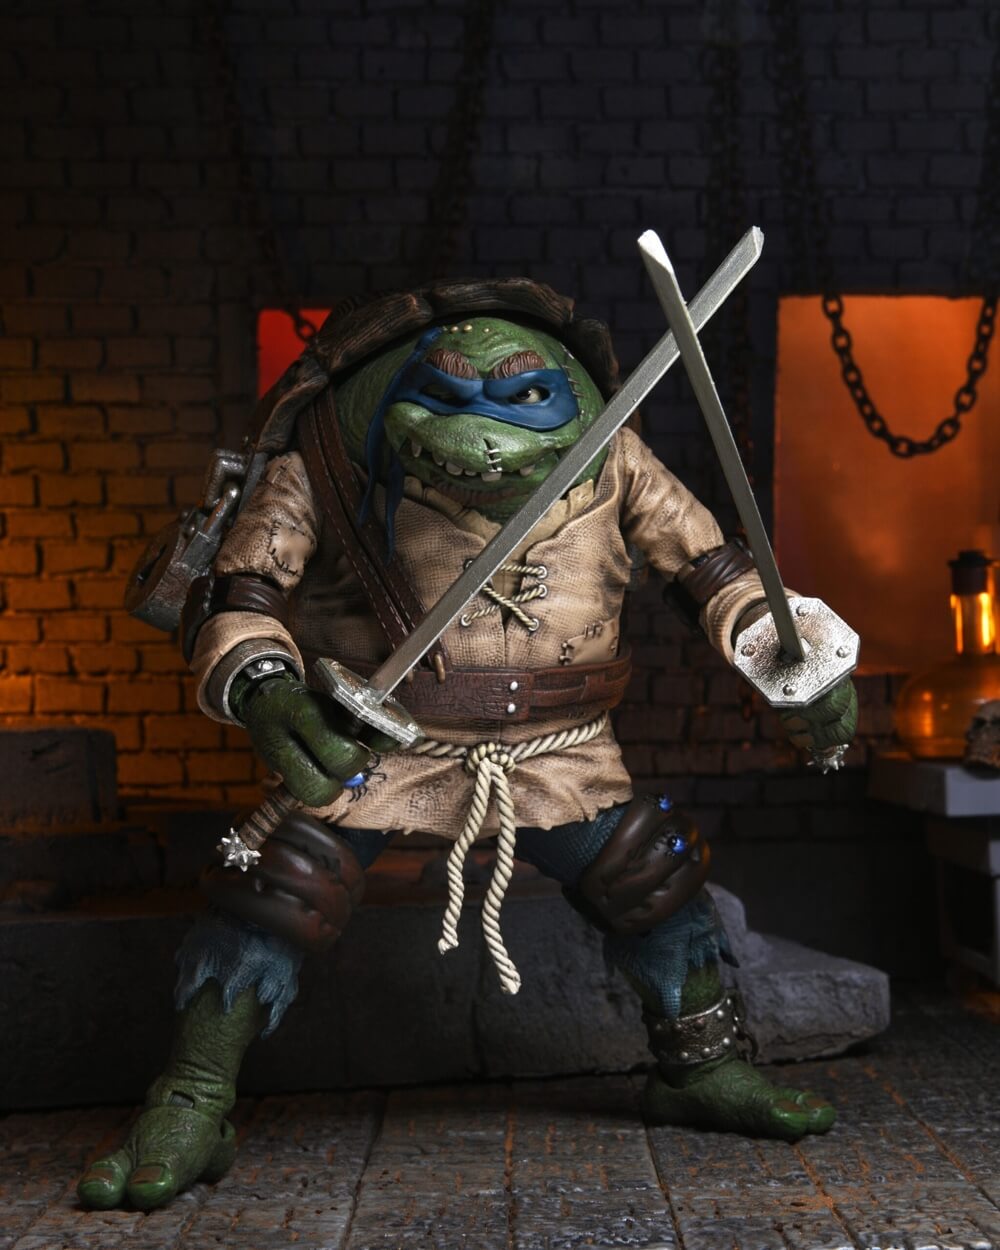 Ultimate Leonardo as The Hunchback Monster Teenage Mutant Ninja Turtles Action Figure